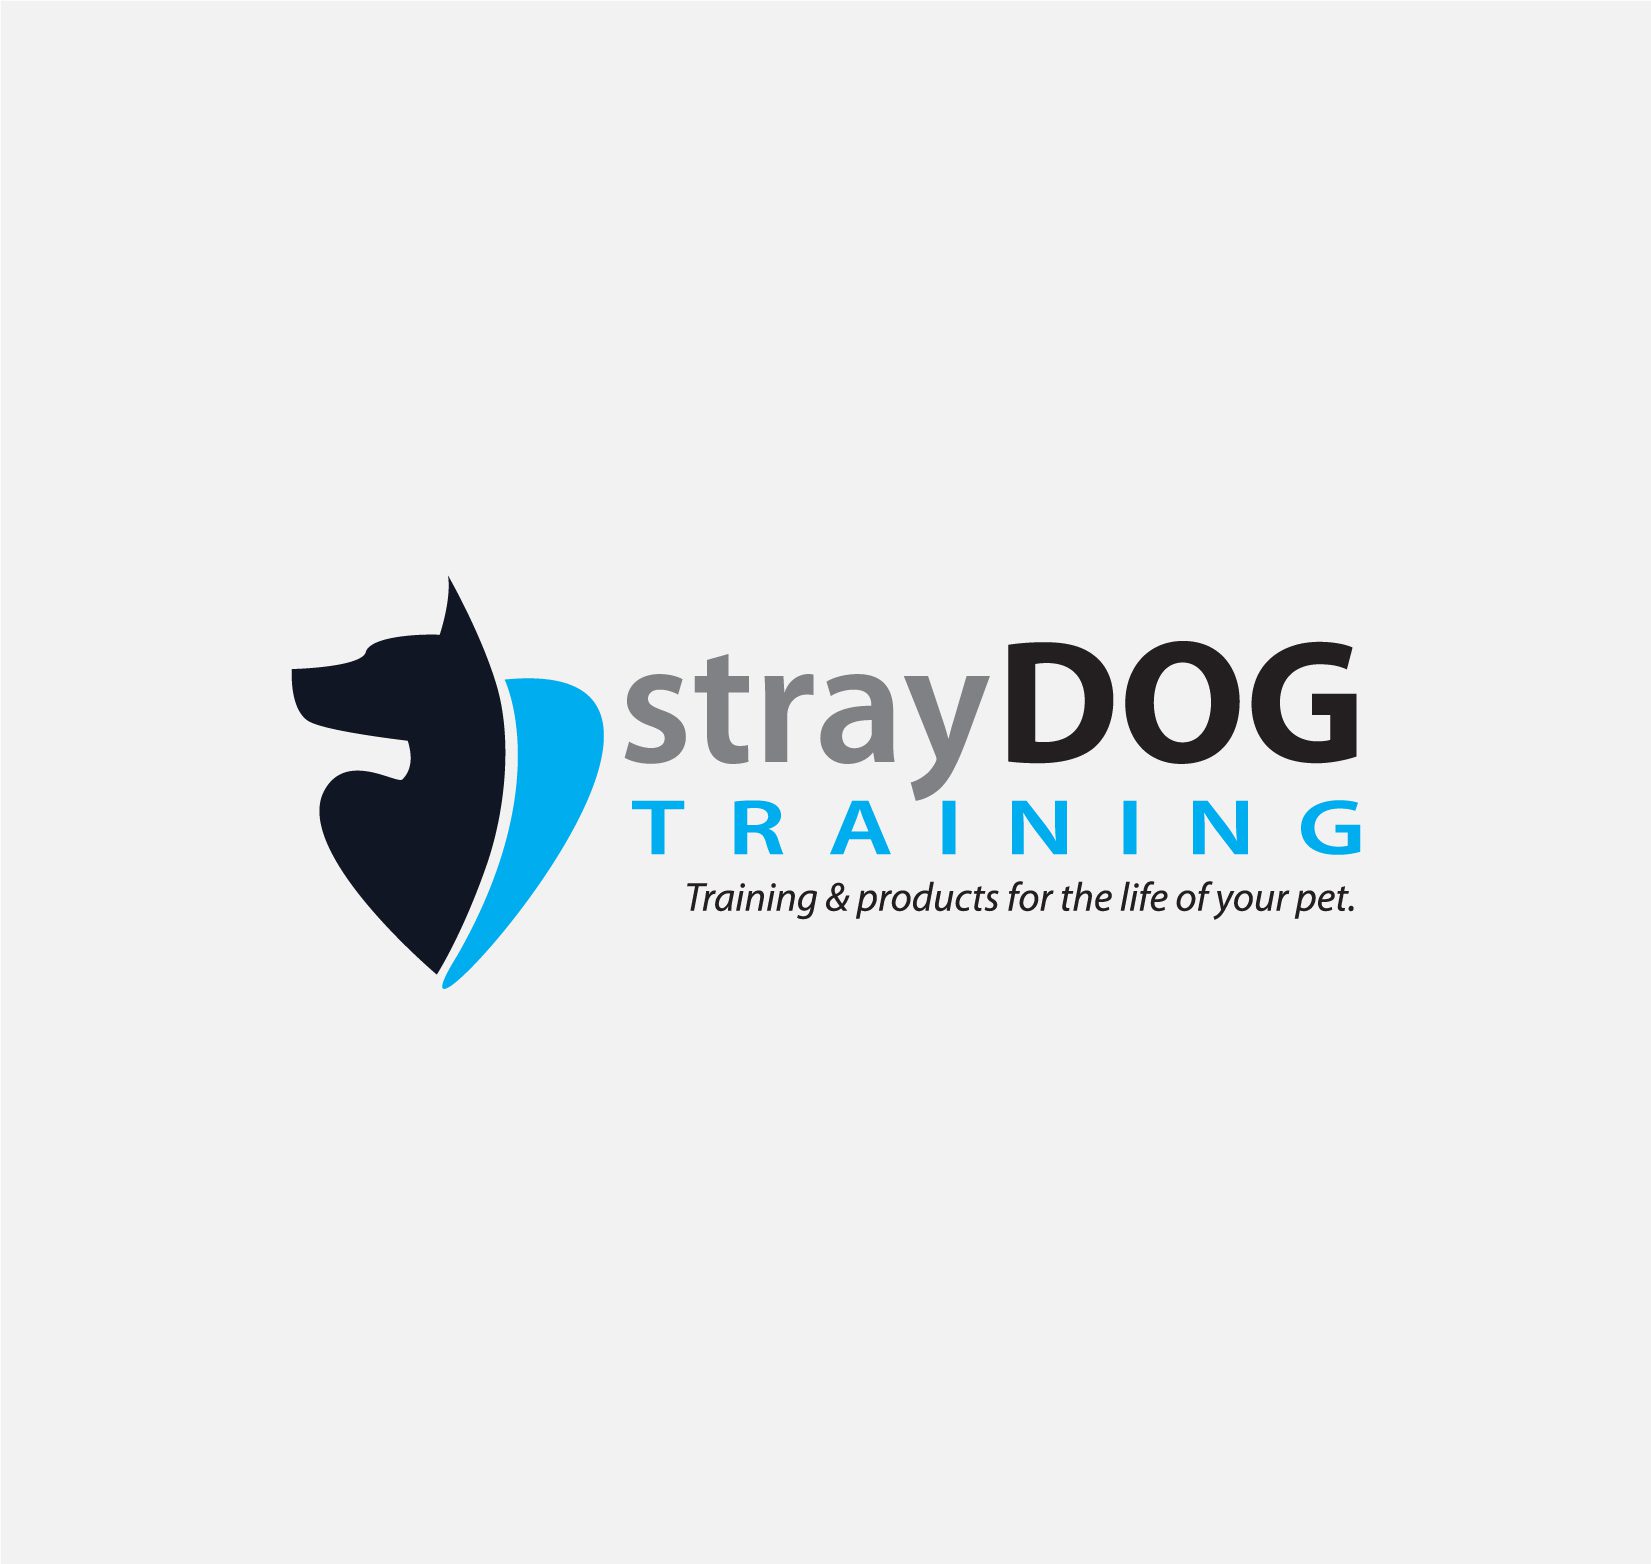 strayDog Training logo